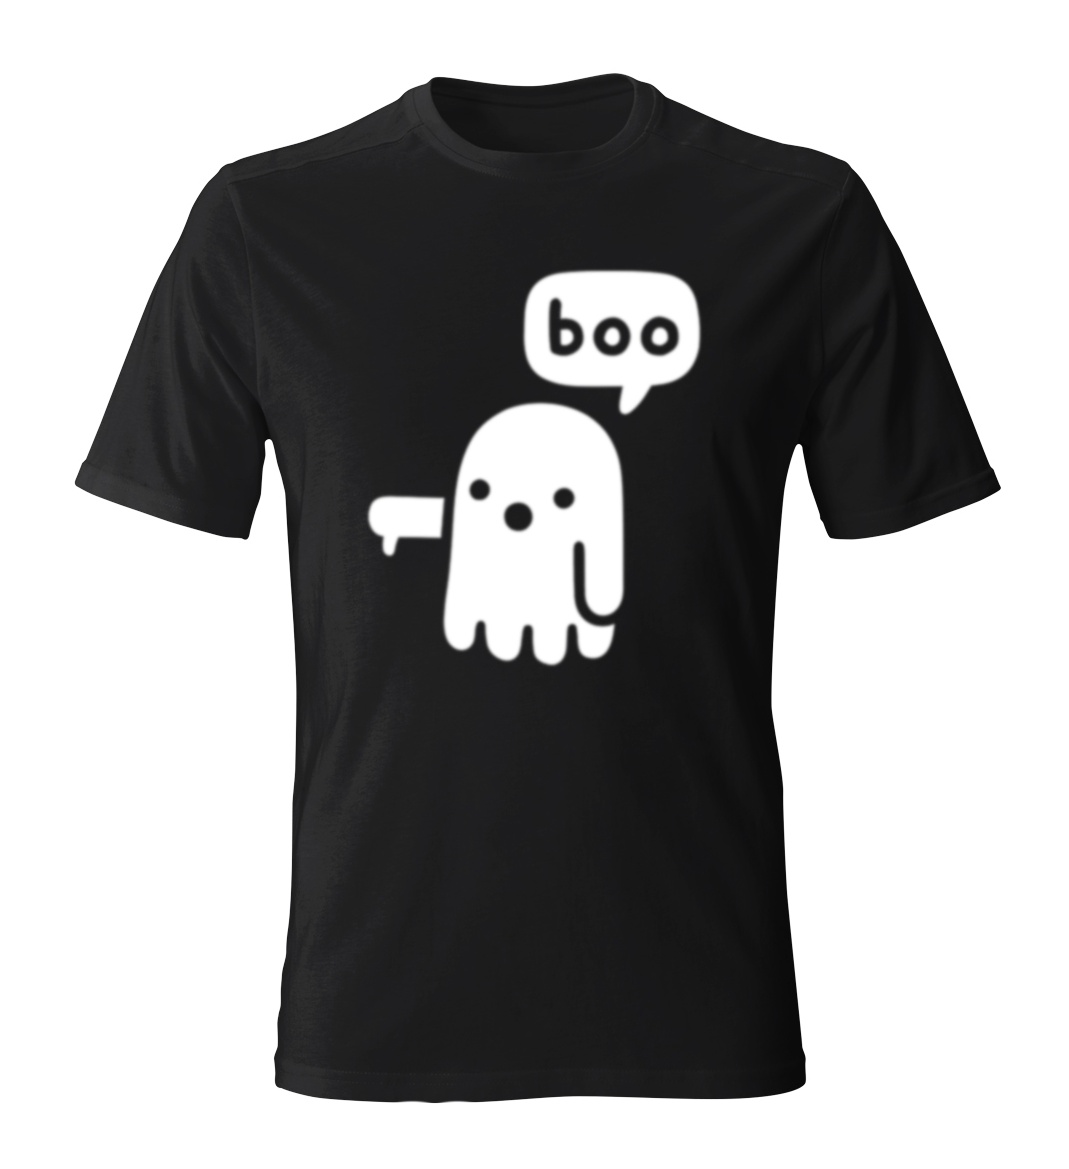 تی شرت مردانه طرح BOO21